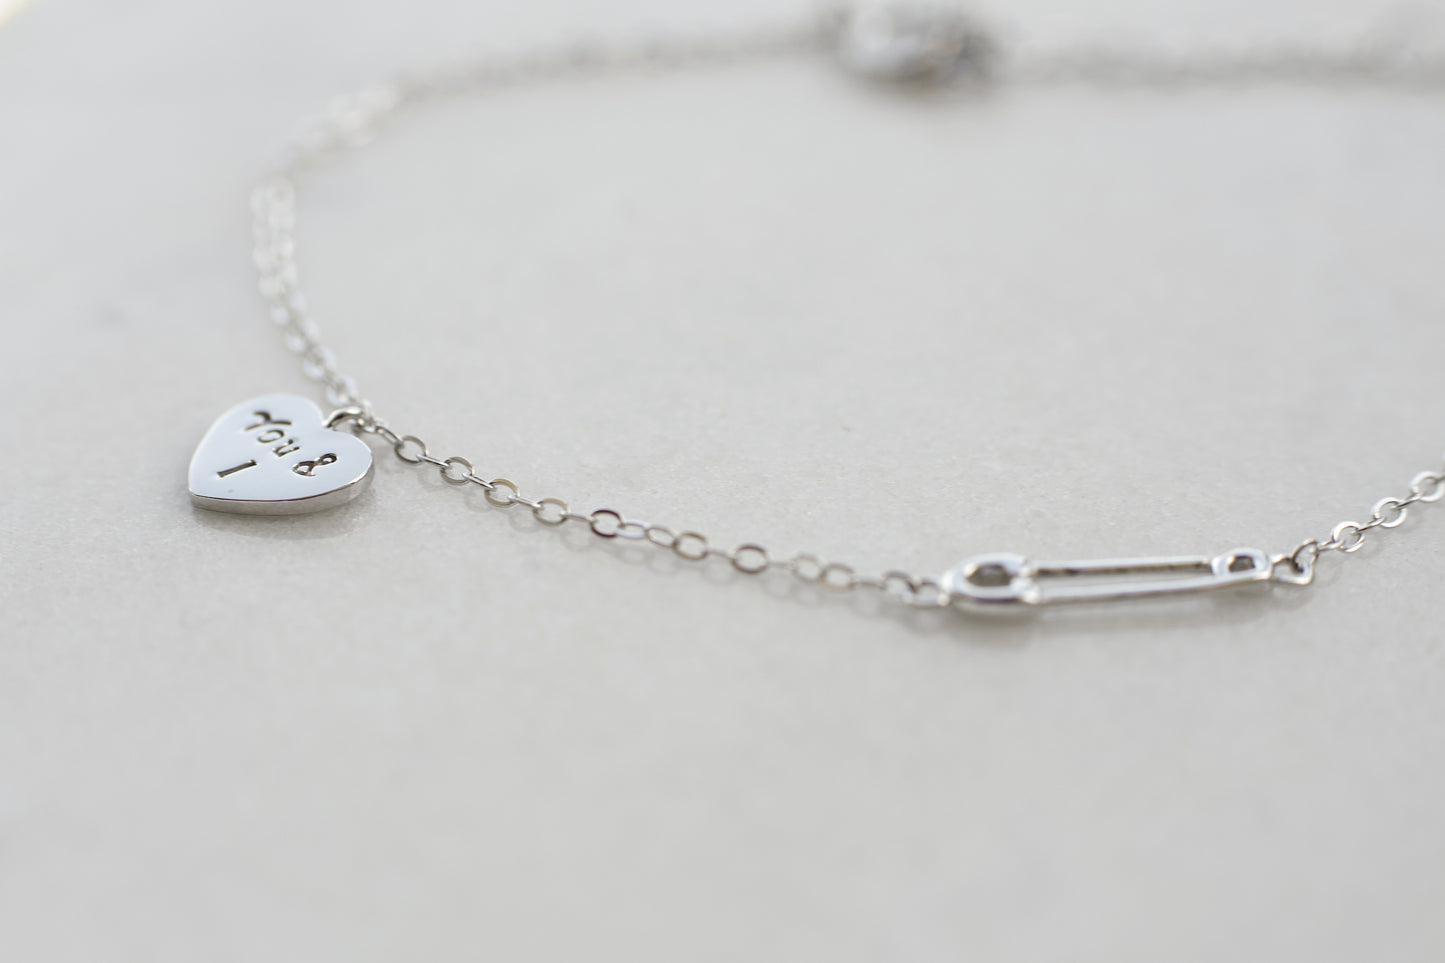 'You & I' Silver Heart Bracelet